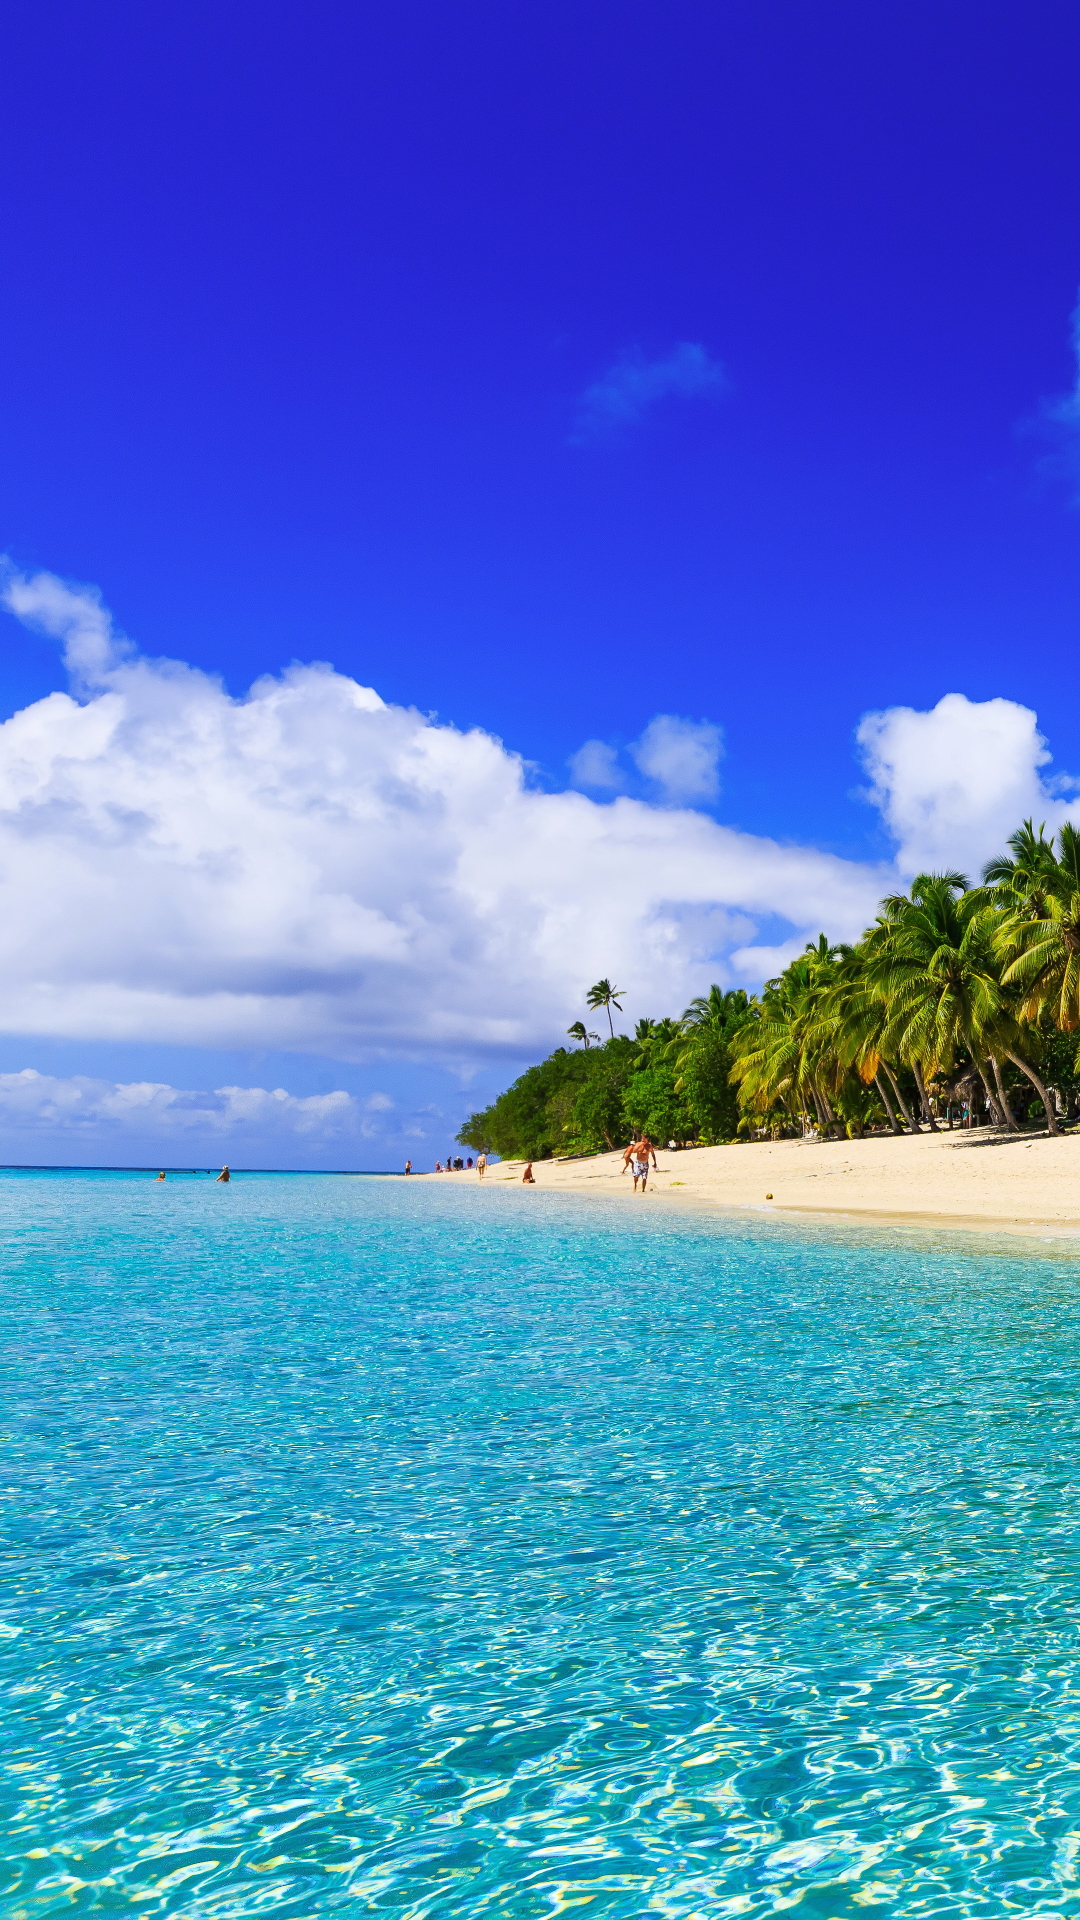 Descarga gratuita de fondo de pantalla para móvil de Mar, Playa, Océano, Tierra, Tropical, Fotografía, Palmera, Tropico.